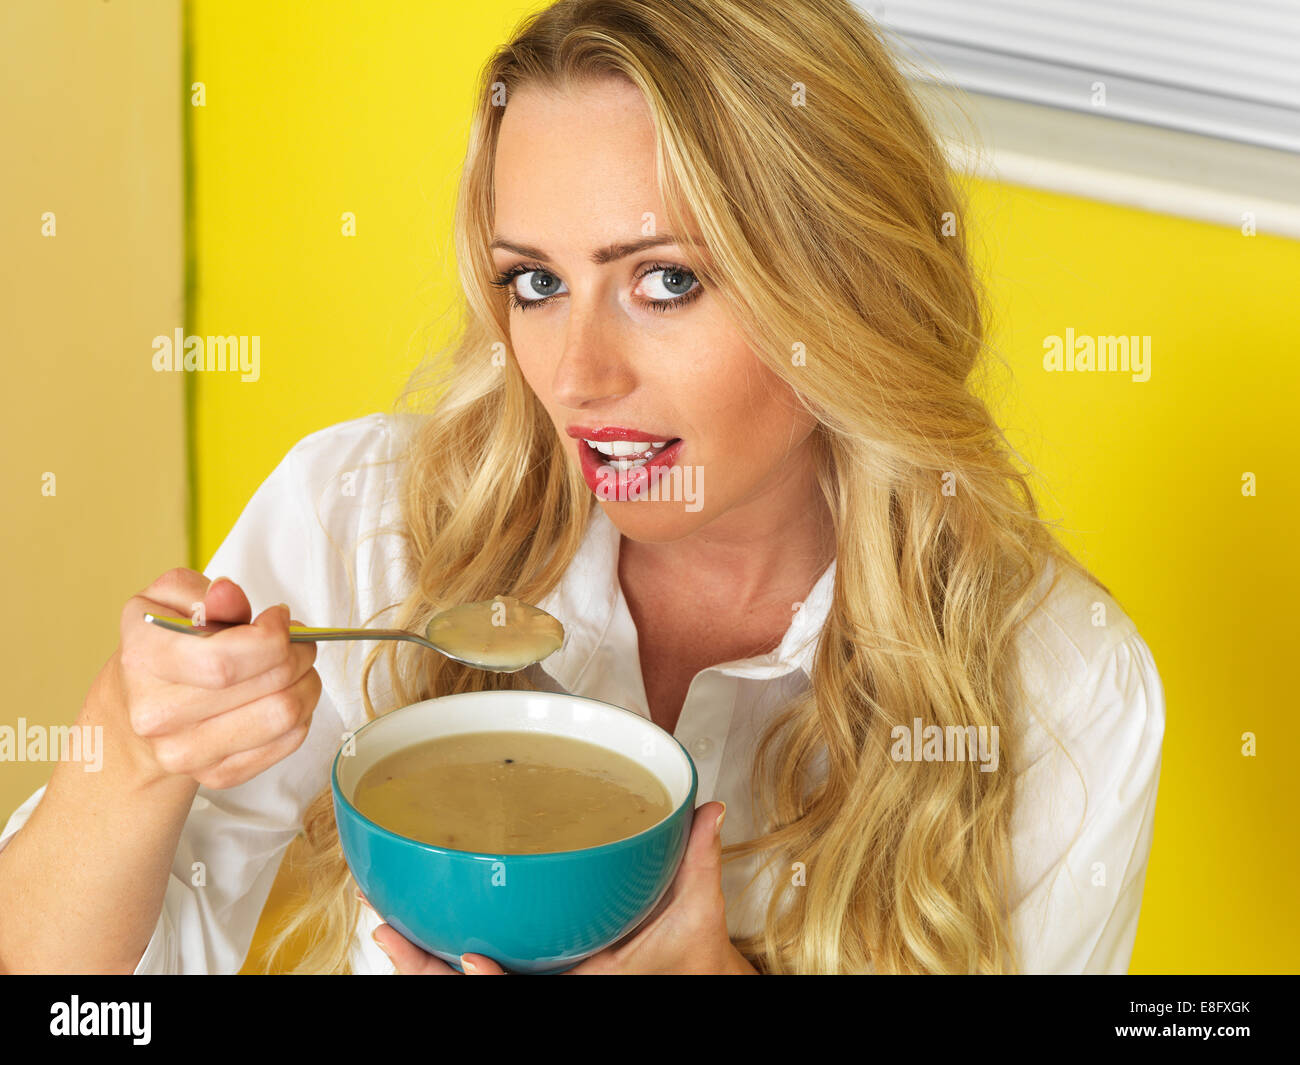 Confident Happy Young Woman, manger un bol de soupe nourrissante chaude, sur fond jaune Banque D'Images